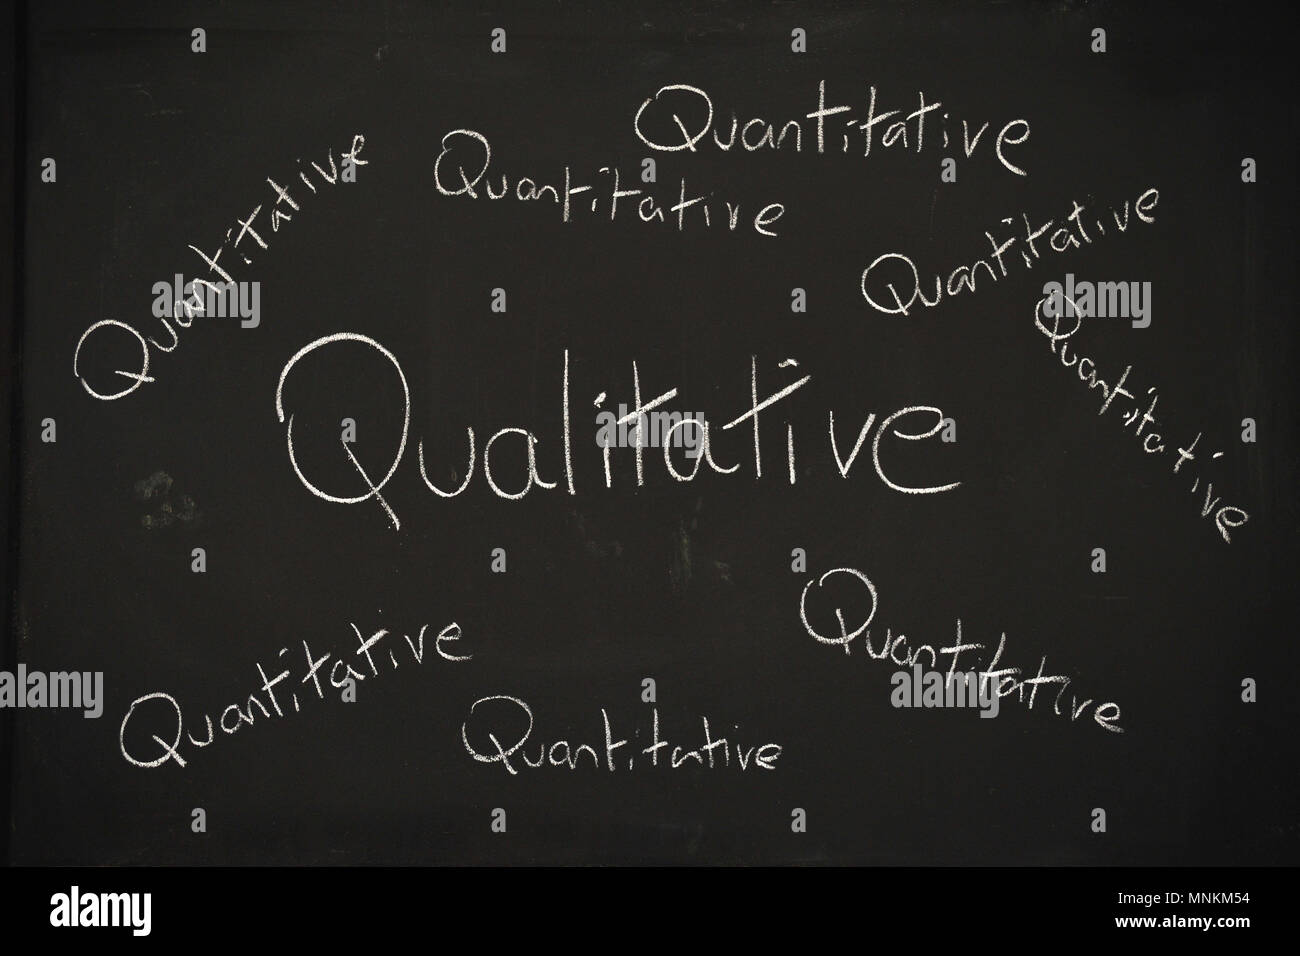 Das Wort Qualitative in Groß schreiben durch viele das Wort Quantitative in kleine Schrift auf einer Tafel geschrieben umgeben geschrieben. Stockfoto